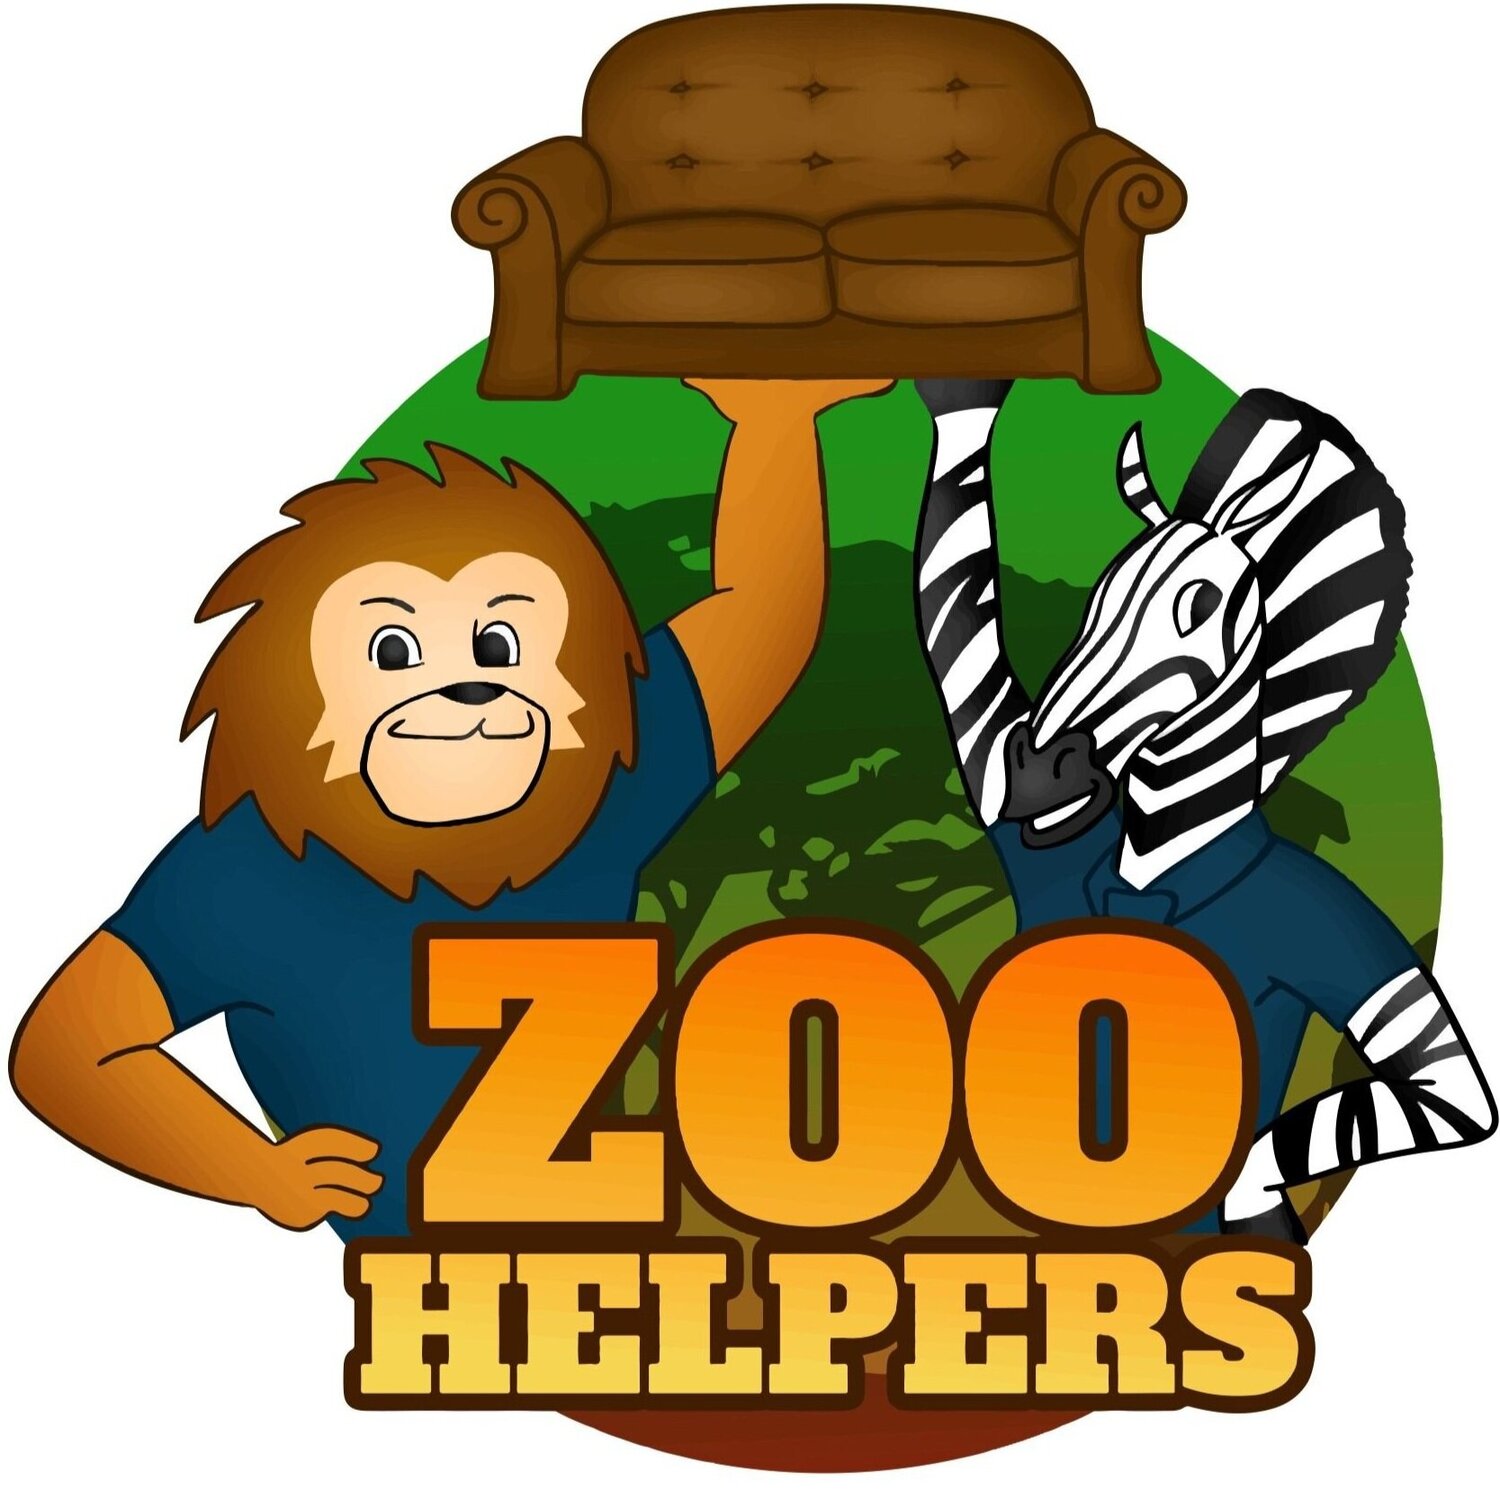 Zoo helpers moving help